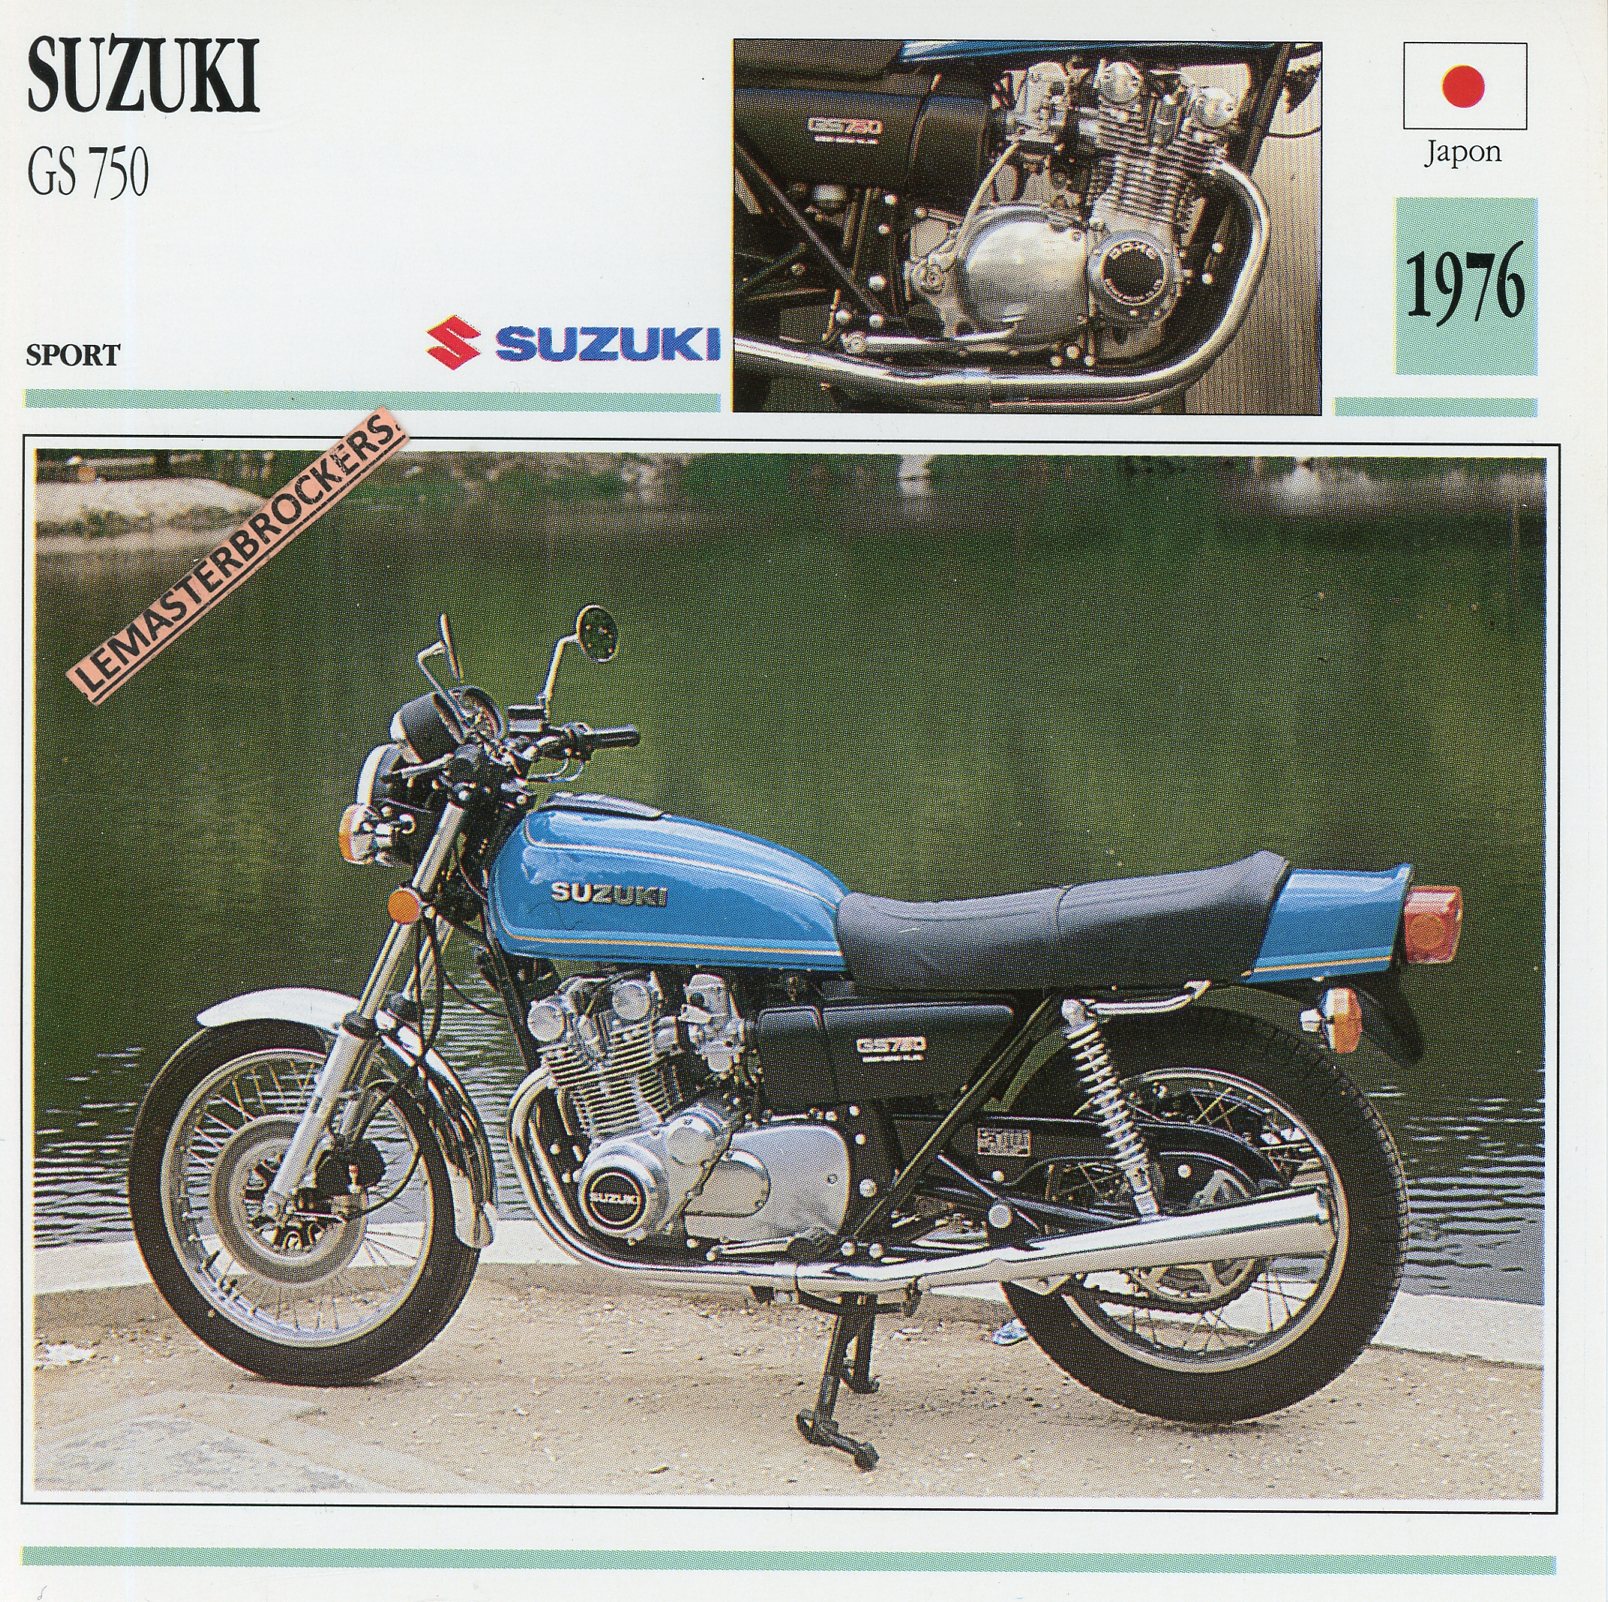 SUZUKI-GS750-1976-FICHE-MOTO-GS-LEMASTERBROCKERS